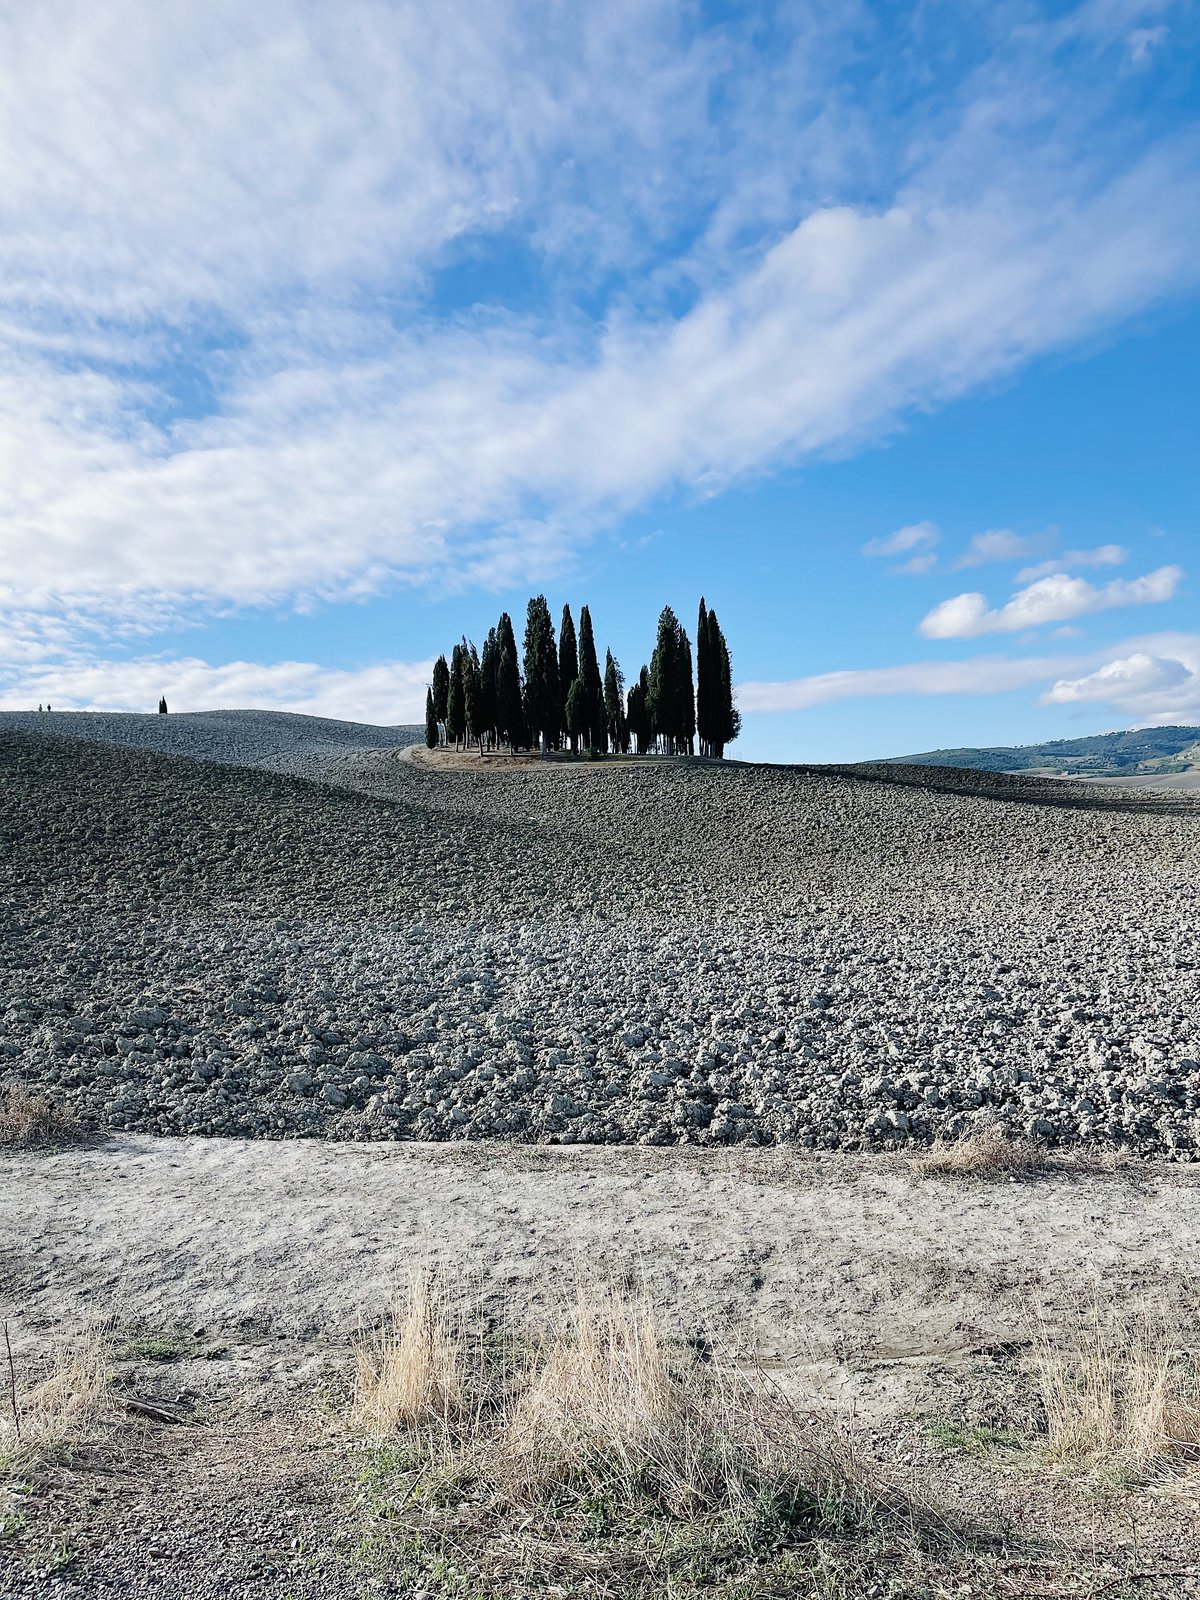 Deserto di Montalcino, i cipressetti - Credits Penelope Vaglini.jpg